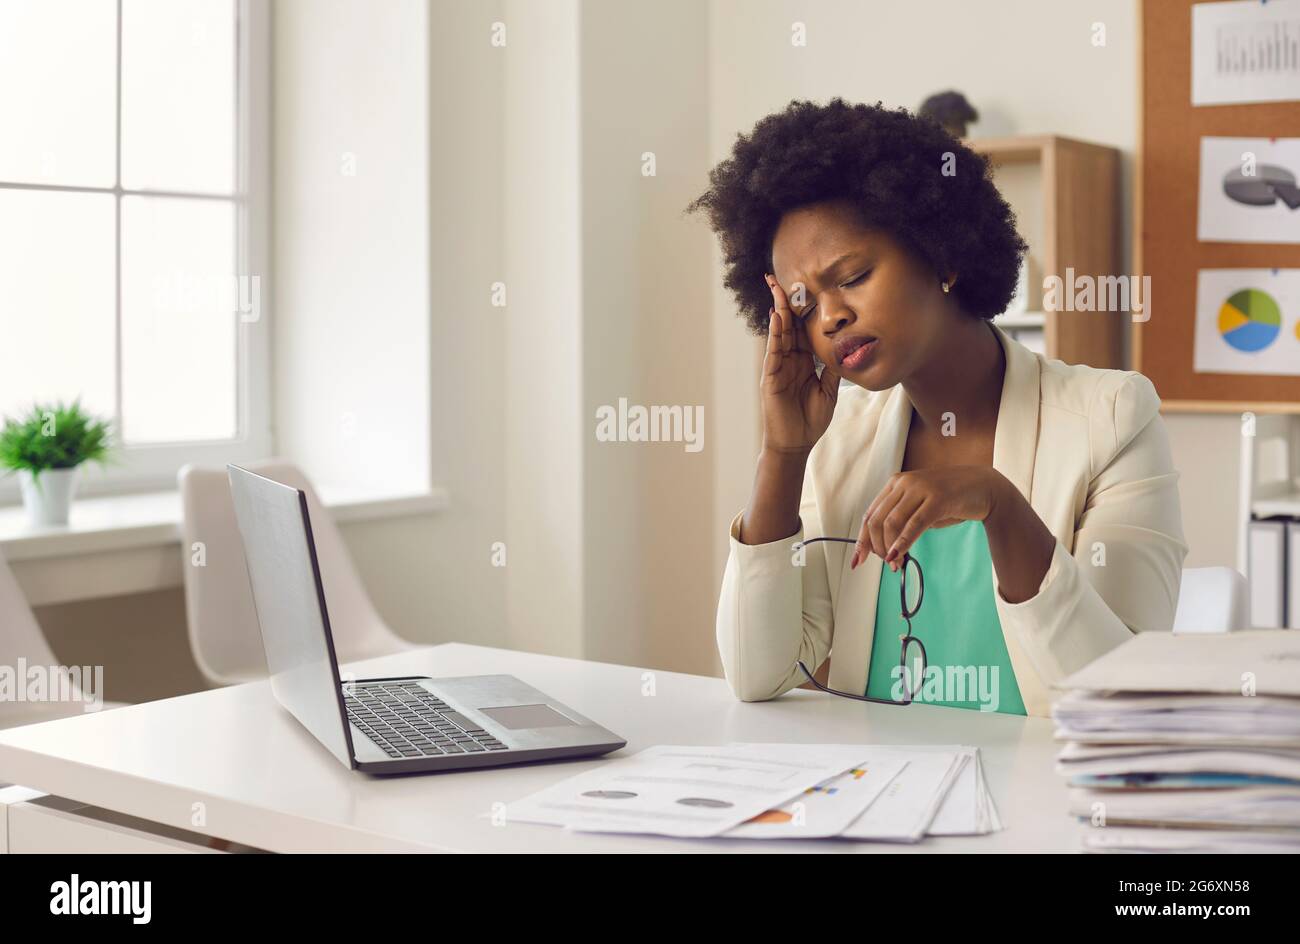 Müde junge Frau mit dunkler Haut, die starke Kopfschmerzen hat und bei der Arbeit vor dem Laptop sitzt. Stockfoto